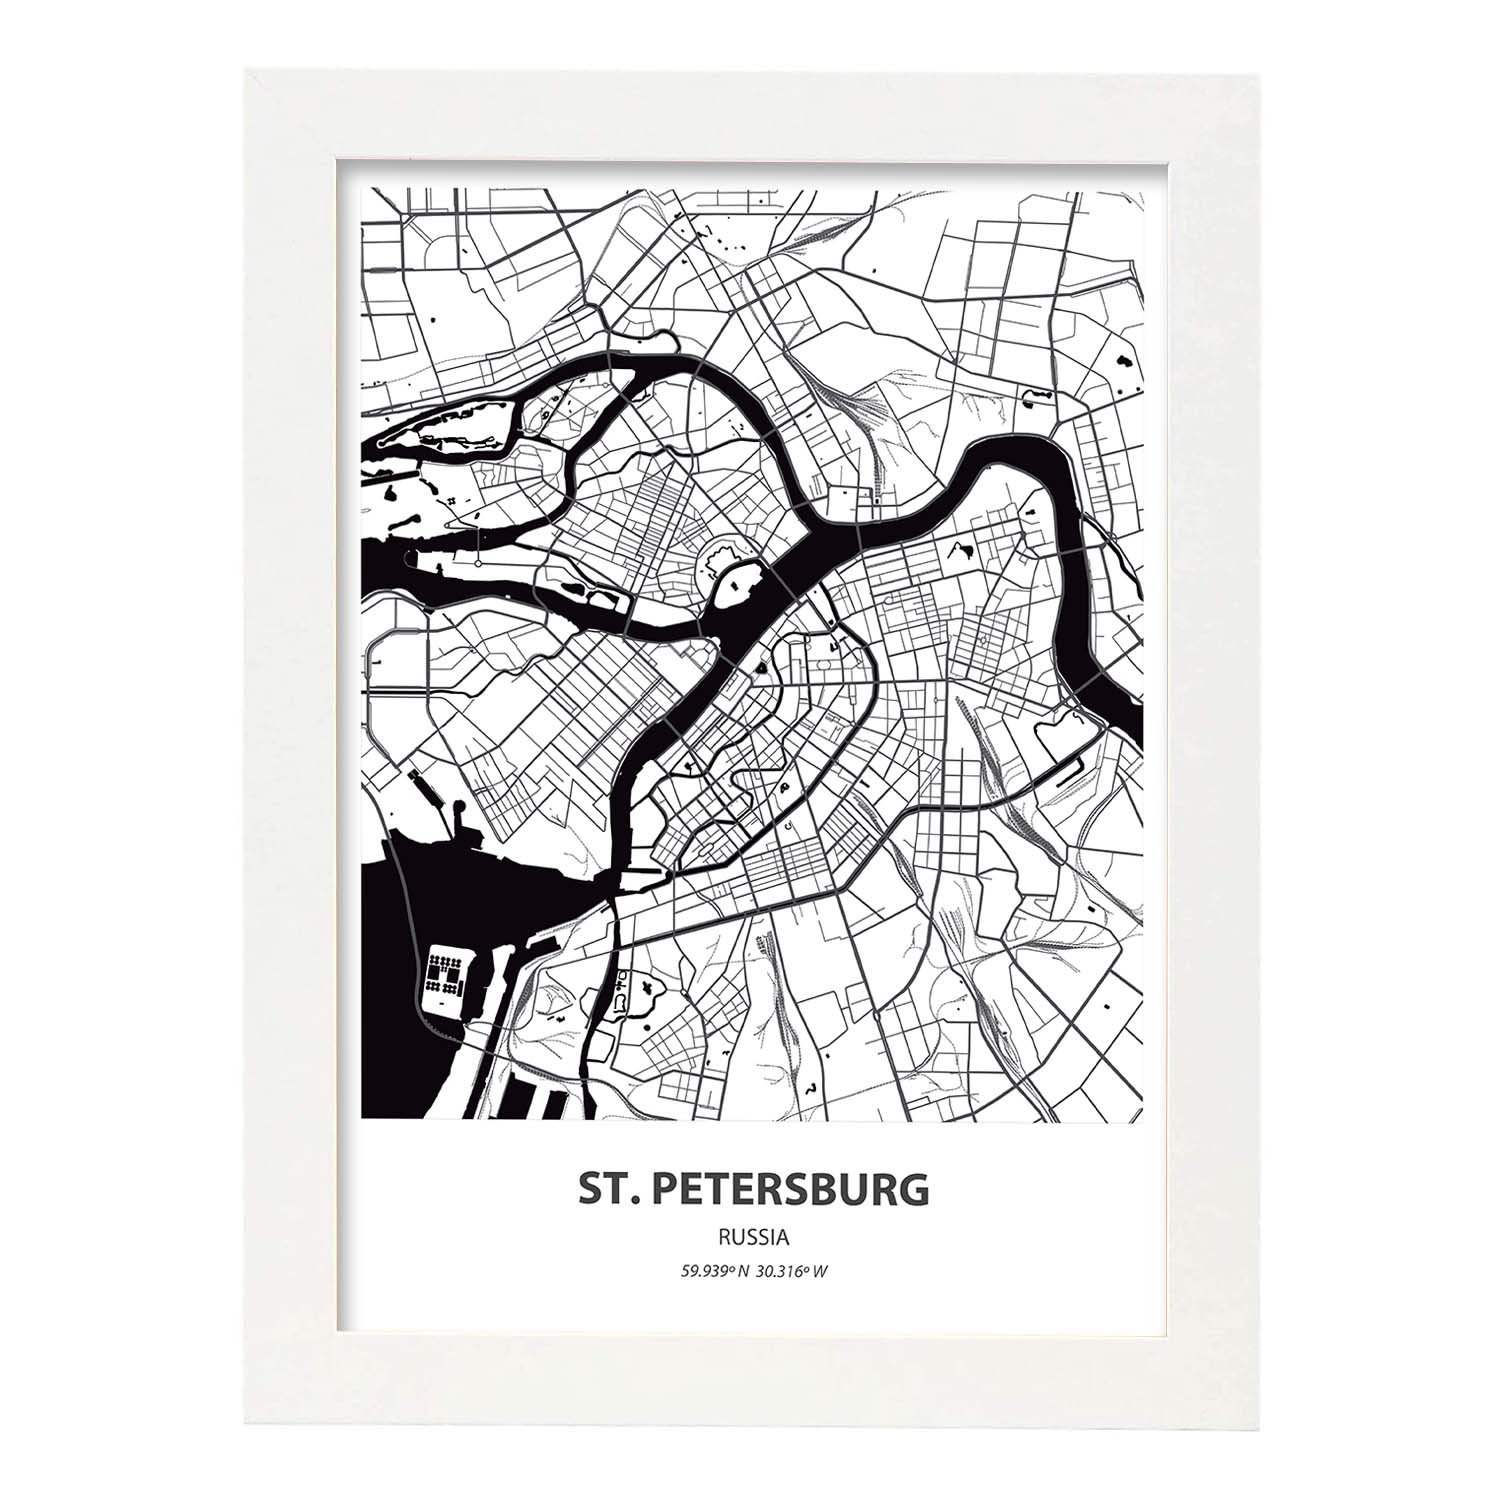 Poster con mapa de St. Petersburg - Rusia. Láminas de ciudades de Asia con mares y ríos en color negro.-Artwork-Nacnic-A3-Marco Blanco-Nacnic Estudio SL